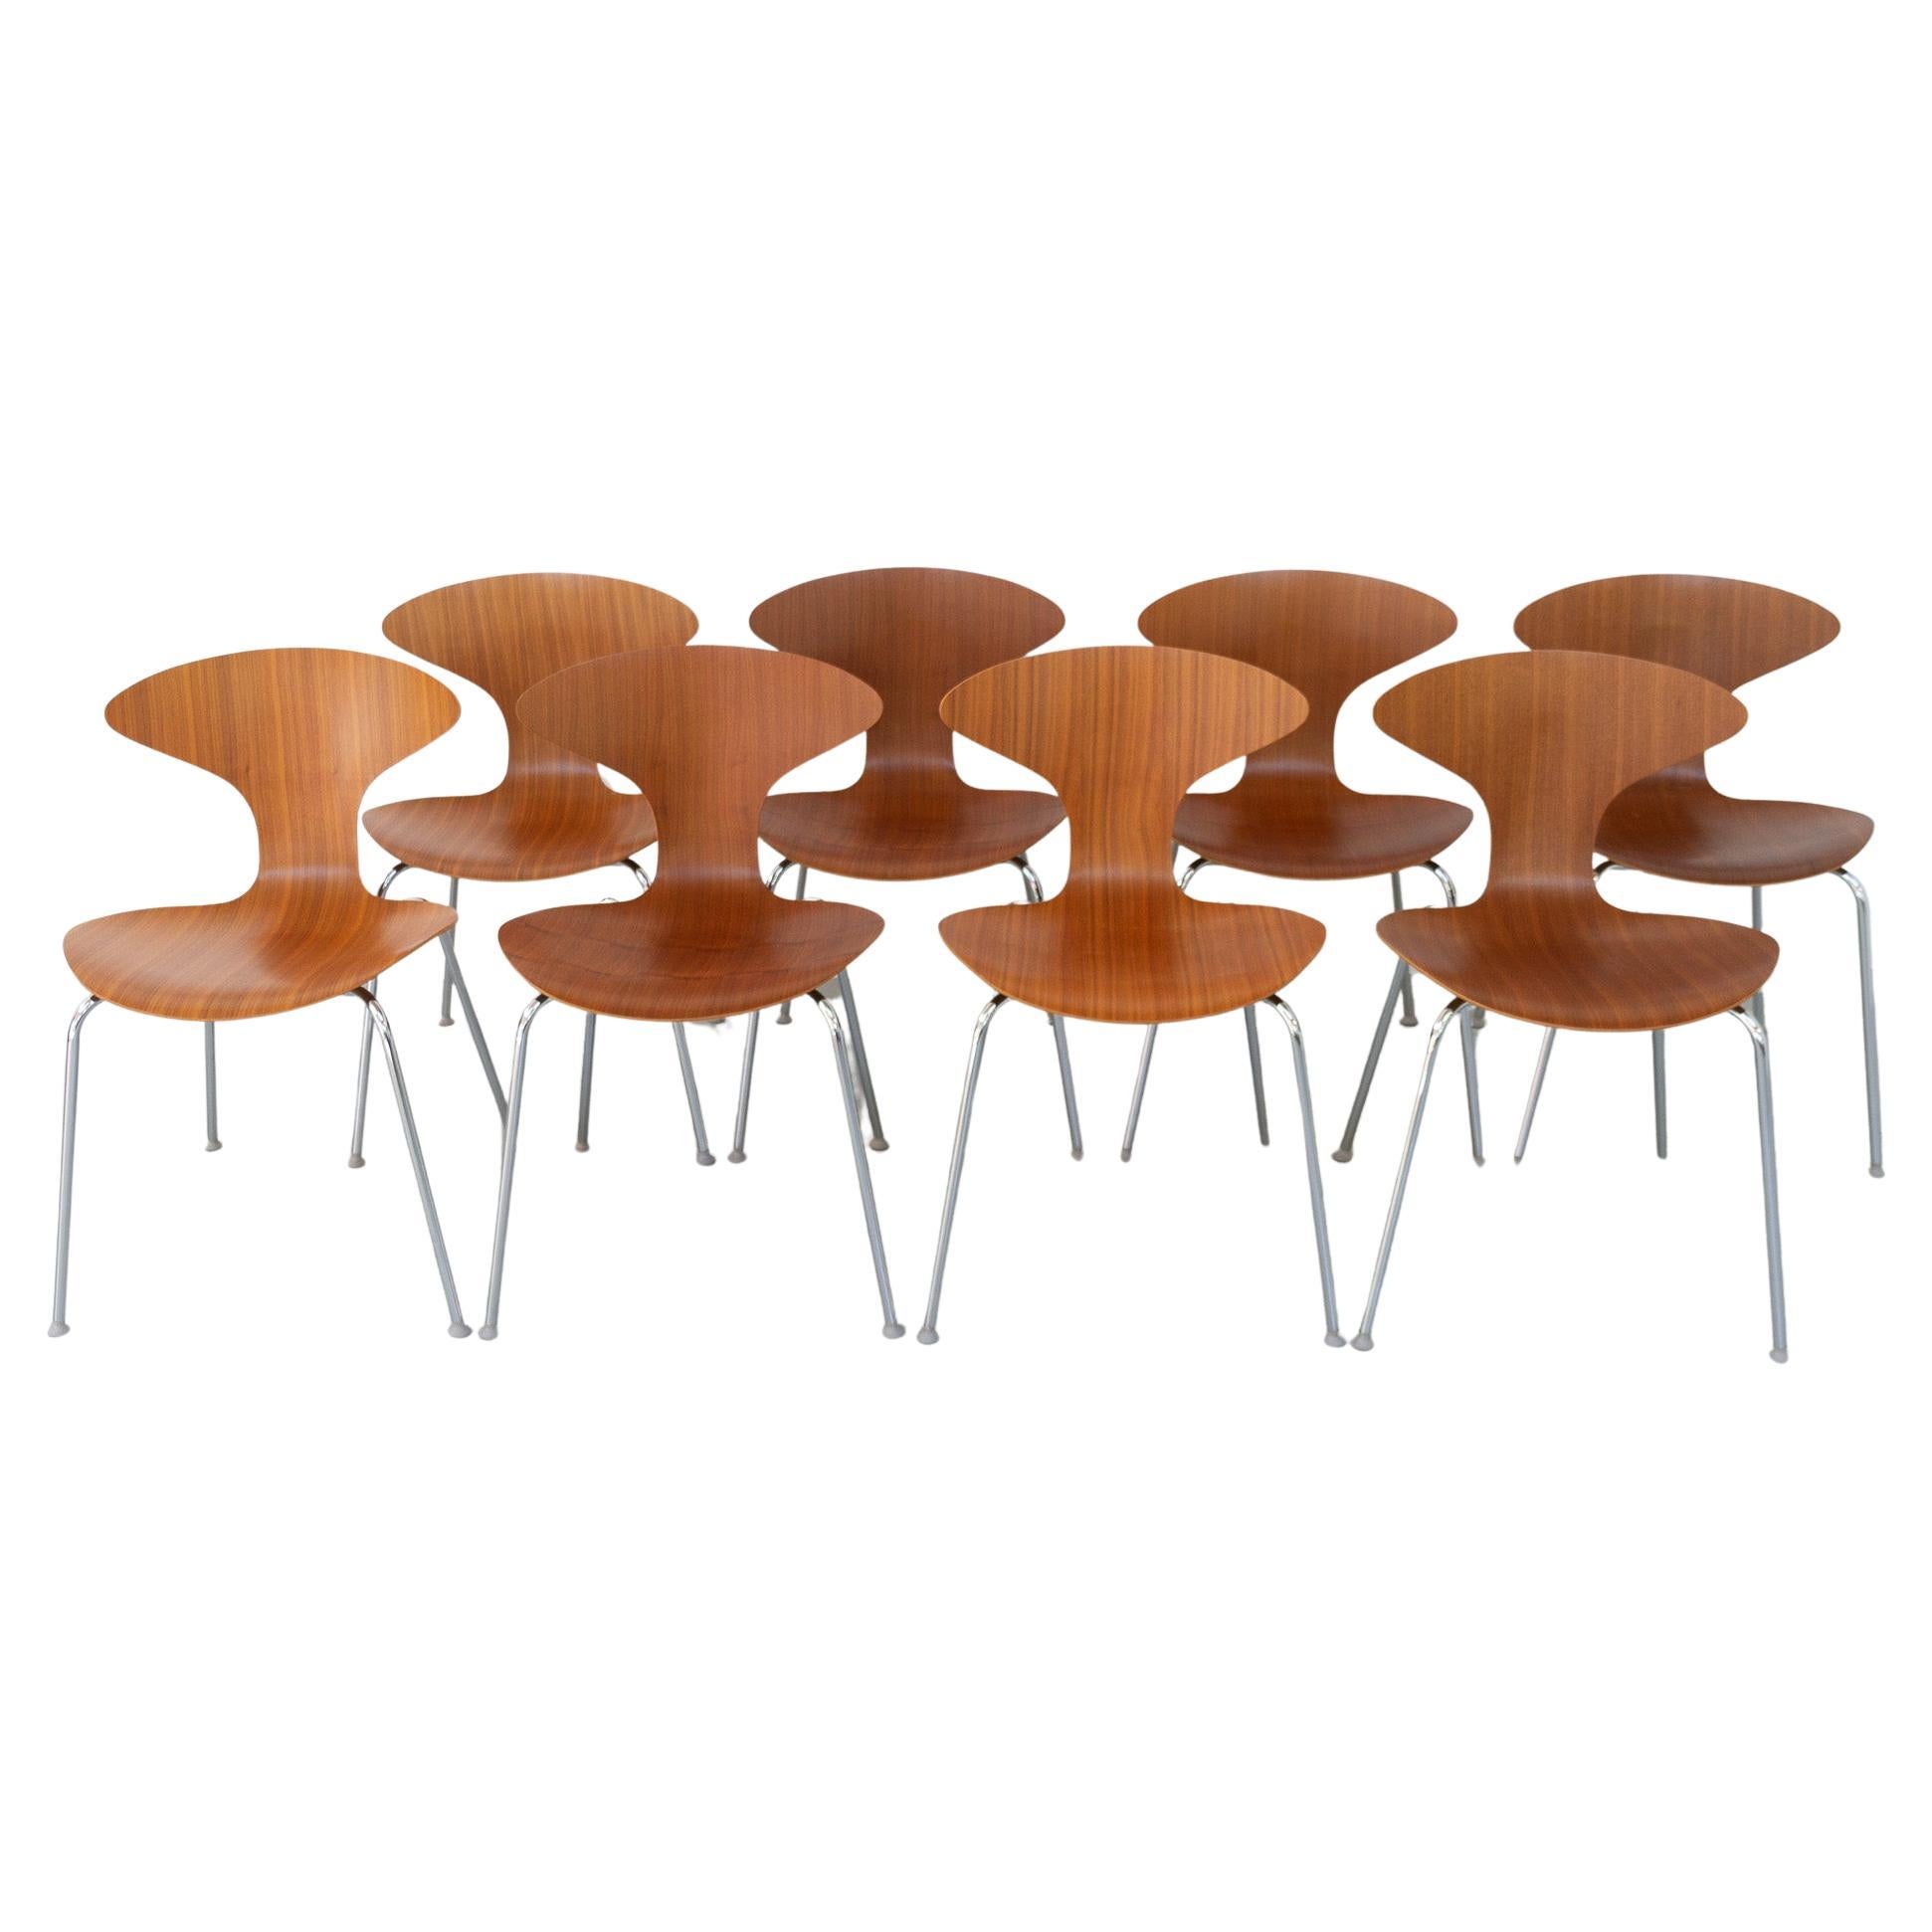 Chaises de salle à manger Orbit en noyer de Ross Lovegrove pour Bernhardt Design, lot de 8.